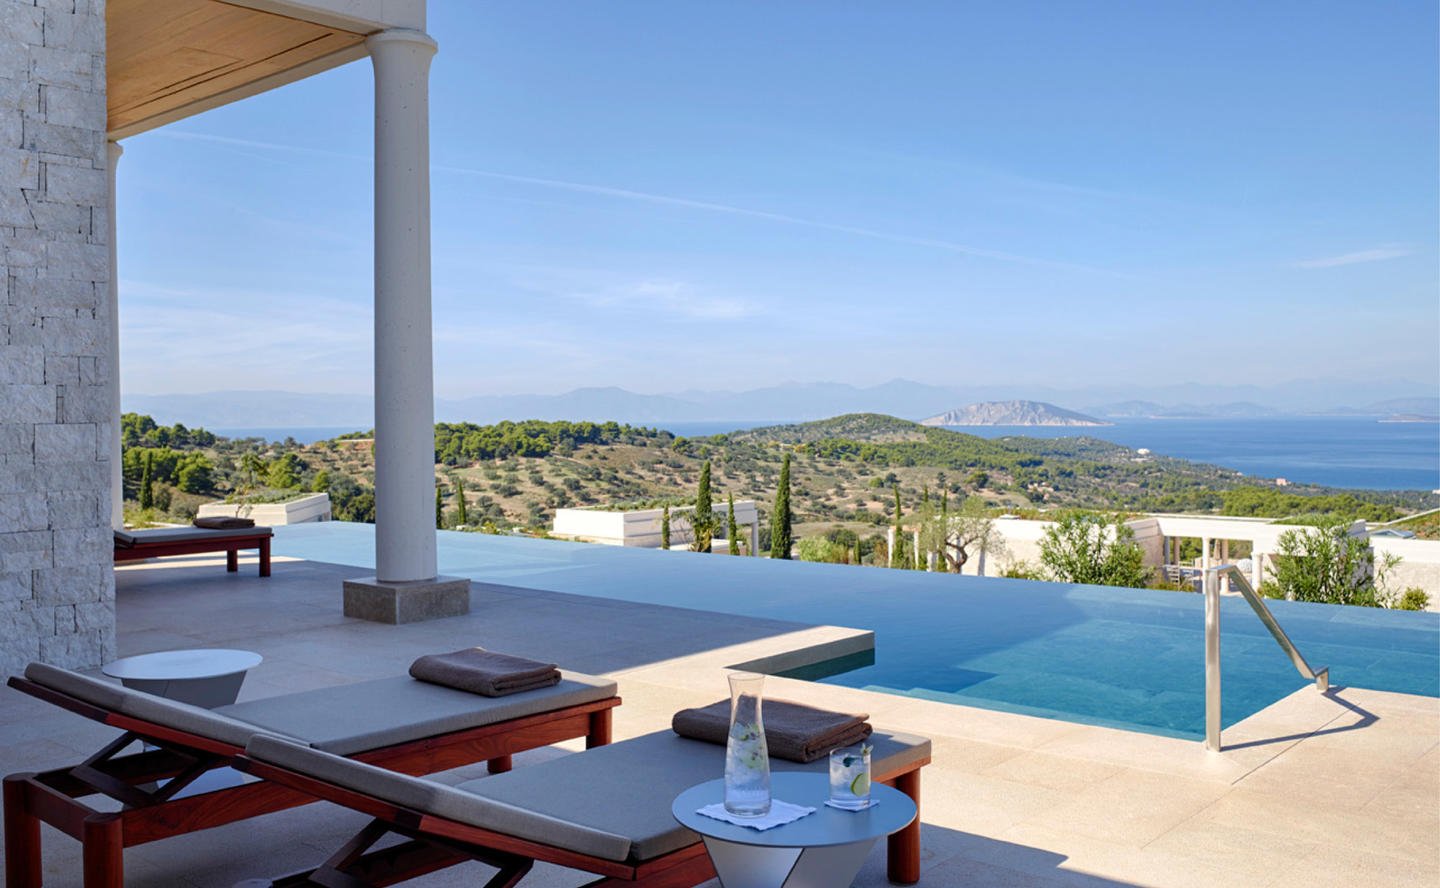 Suite Swimming Pool, Villa 20 - Amanzoe, Greece